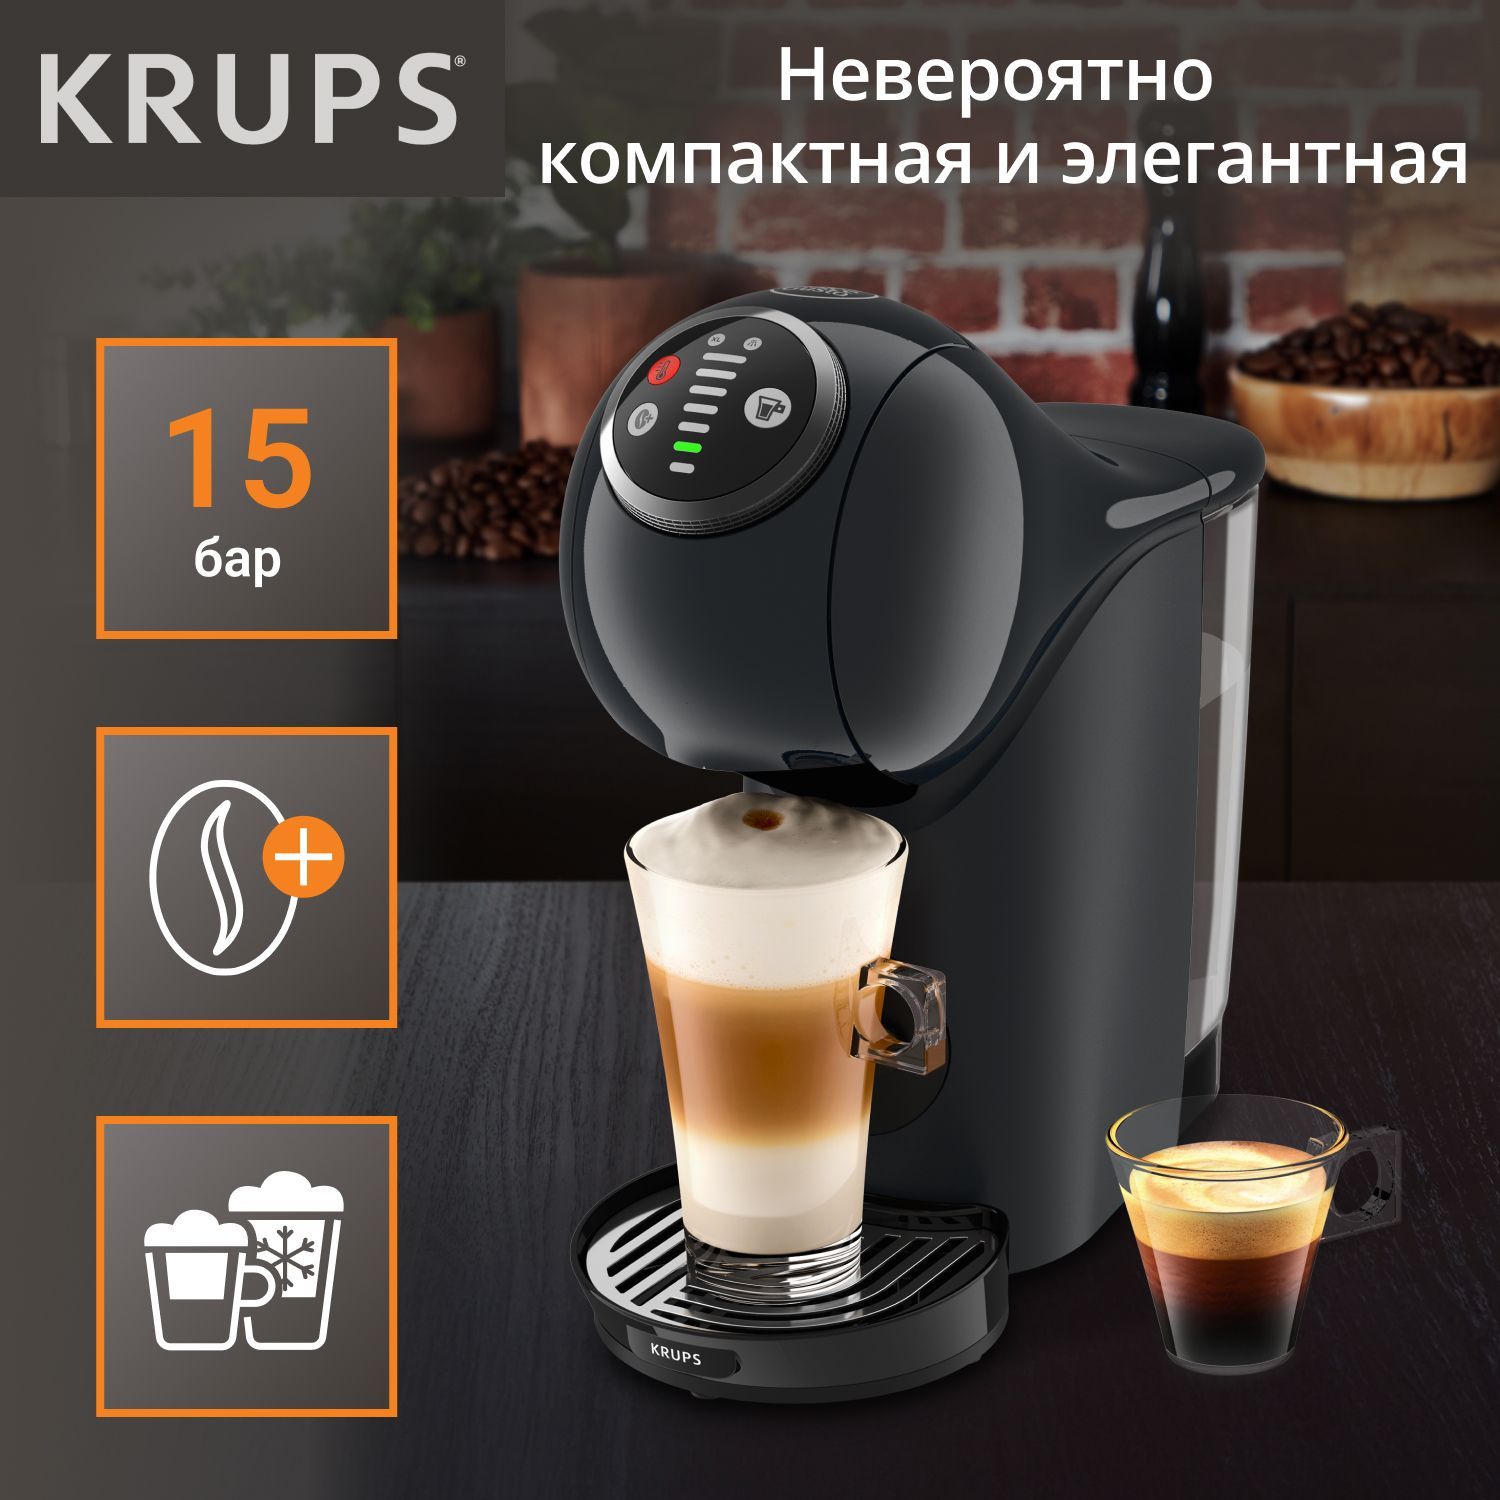 Кофеварка Капсульная Plus интернет-магазине S Nescafe низкой в Krups купить по Kp340810 OZON Dolce цене Genio Gusto –